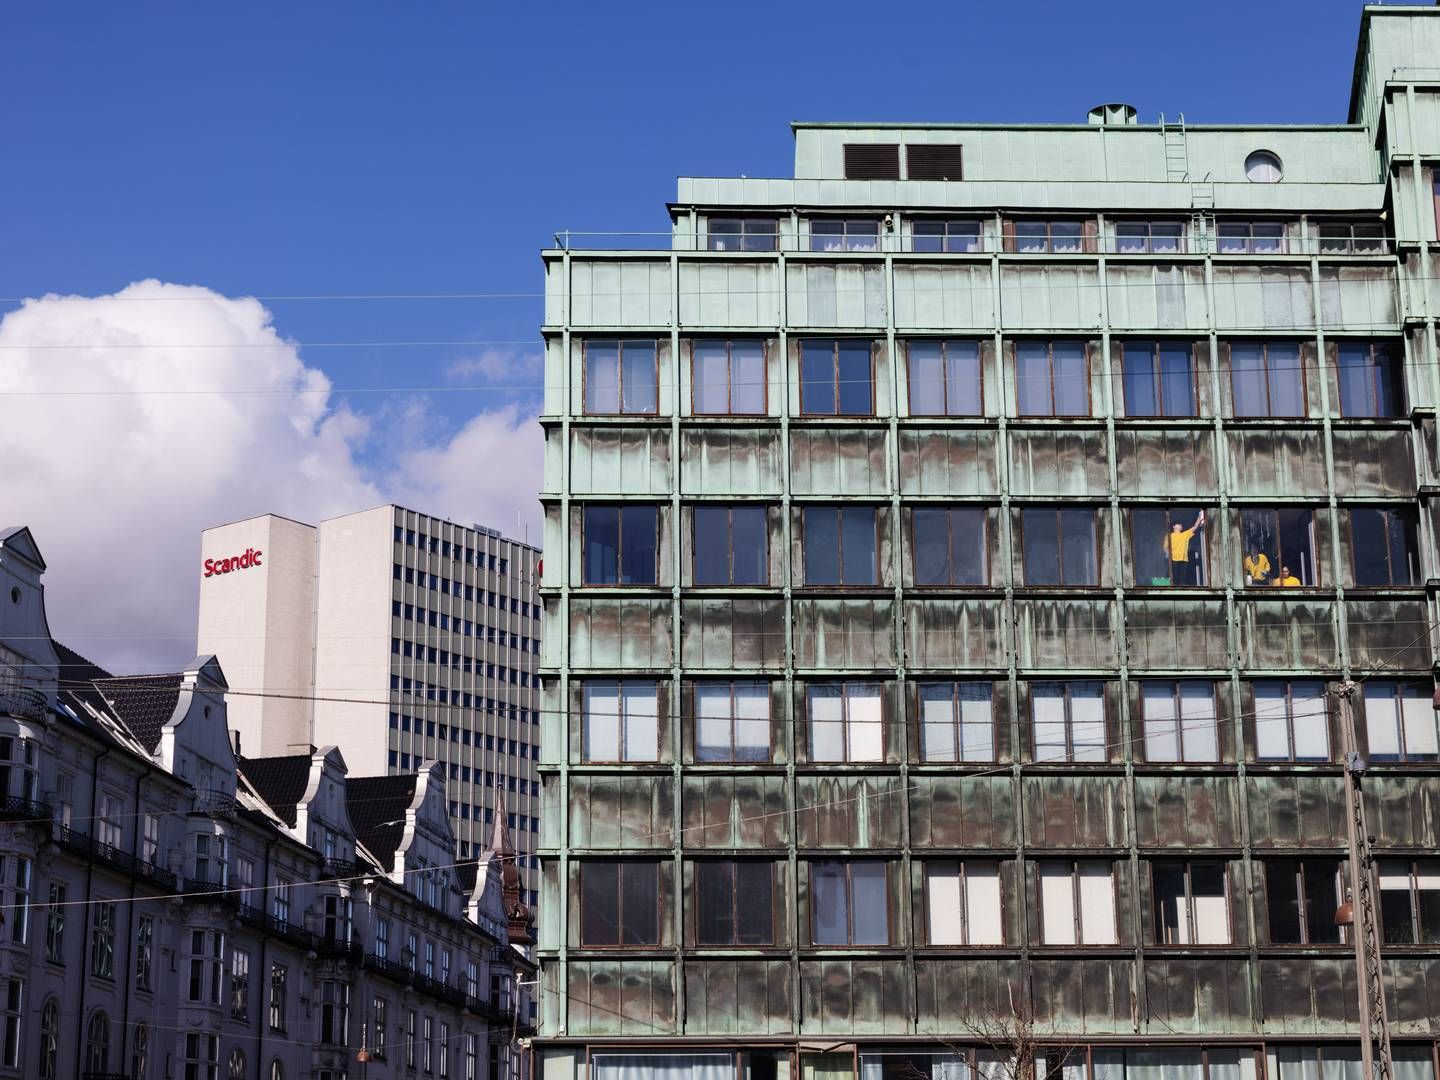 Softwareselskabet Labster er i Danmark registreret på Vesterbrogade i København. Her er det Nordeas filial i den modsatte ende af gaden ved Vesterport og et af hotelkæden Scandics hoteller i baggrunden | Foto: Gregers Tycho